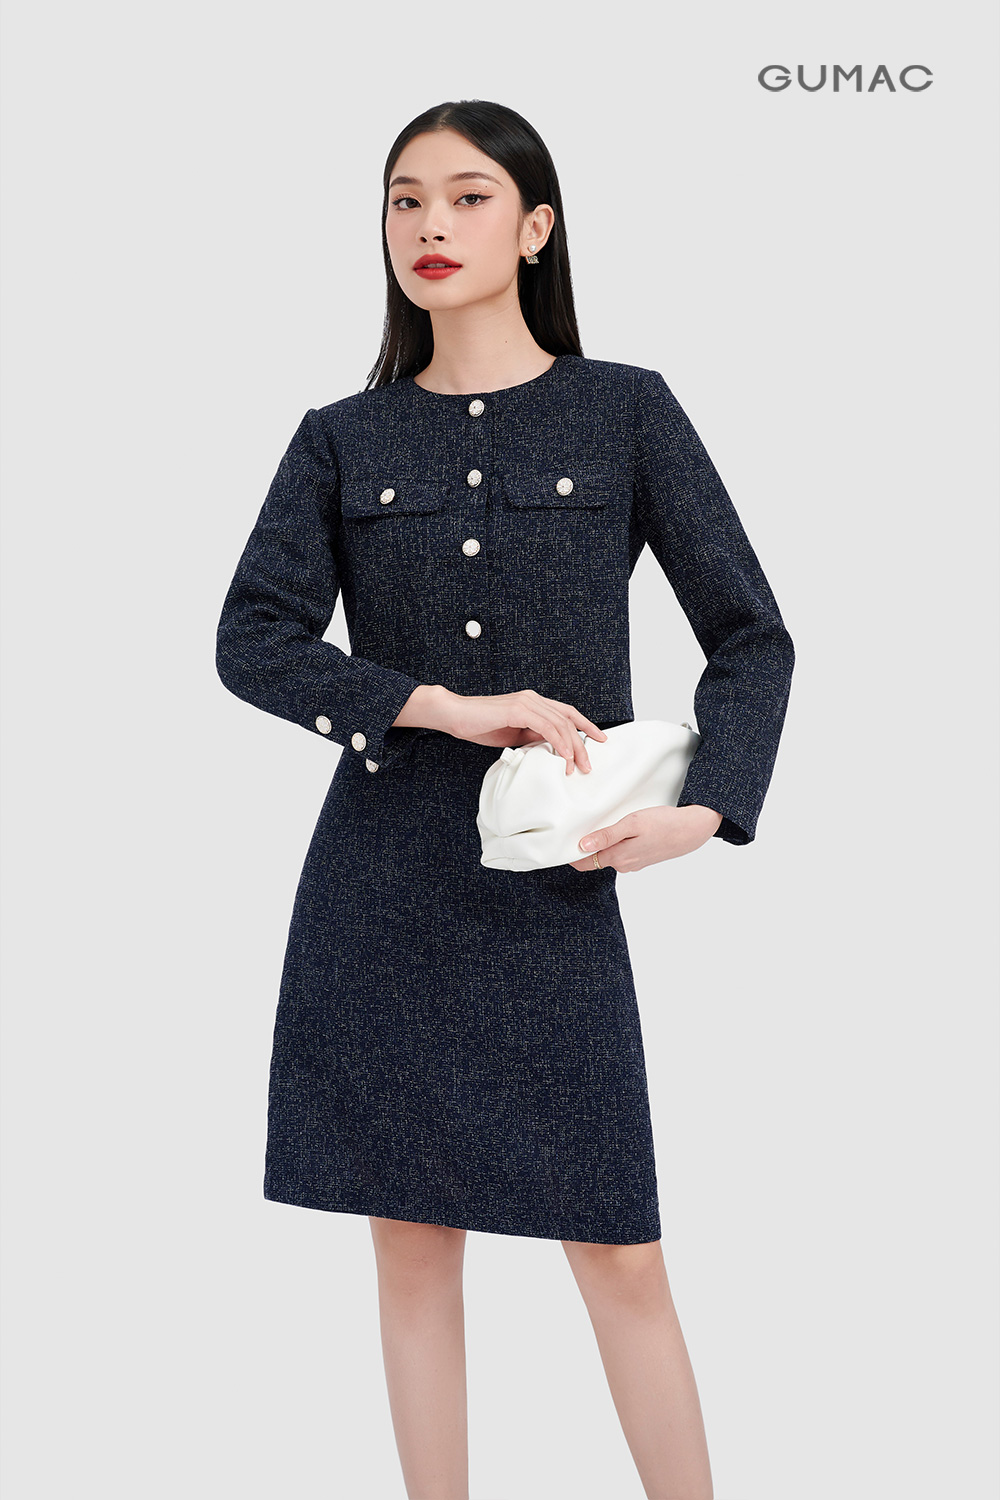 Vải Dạ Tweed Dạ Nanh Sói Vải Dạ kim tuyến Chân Váy Dạ Hàn Quốc may áo  khoác có 10 màu mangtovestzip  MixASale